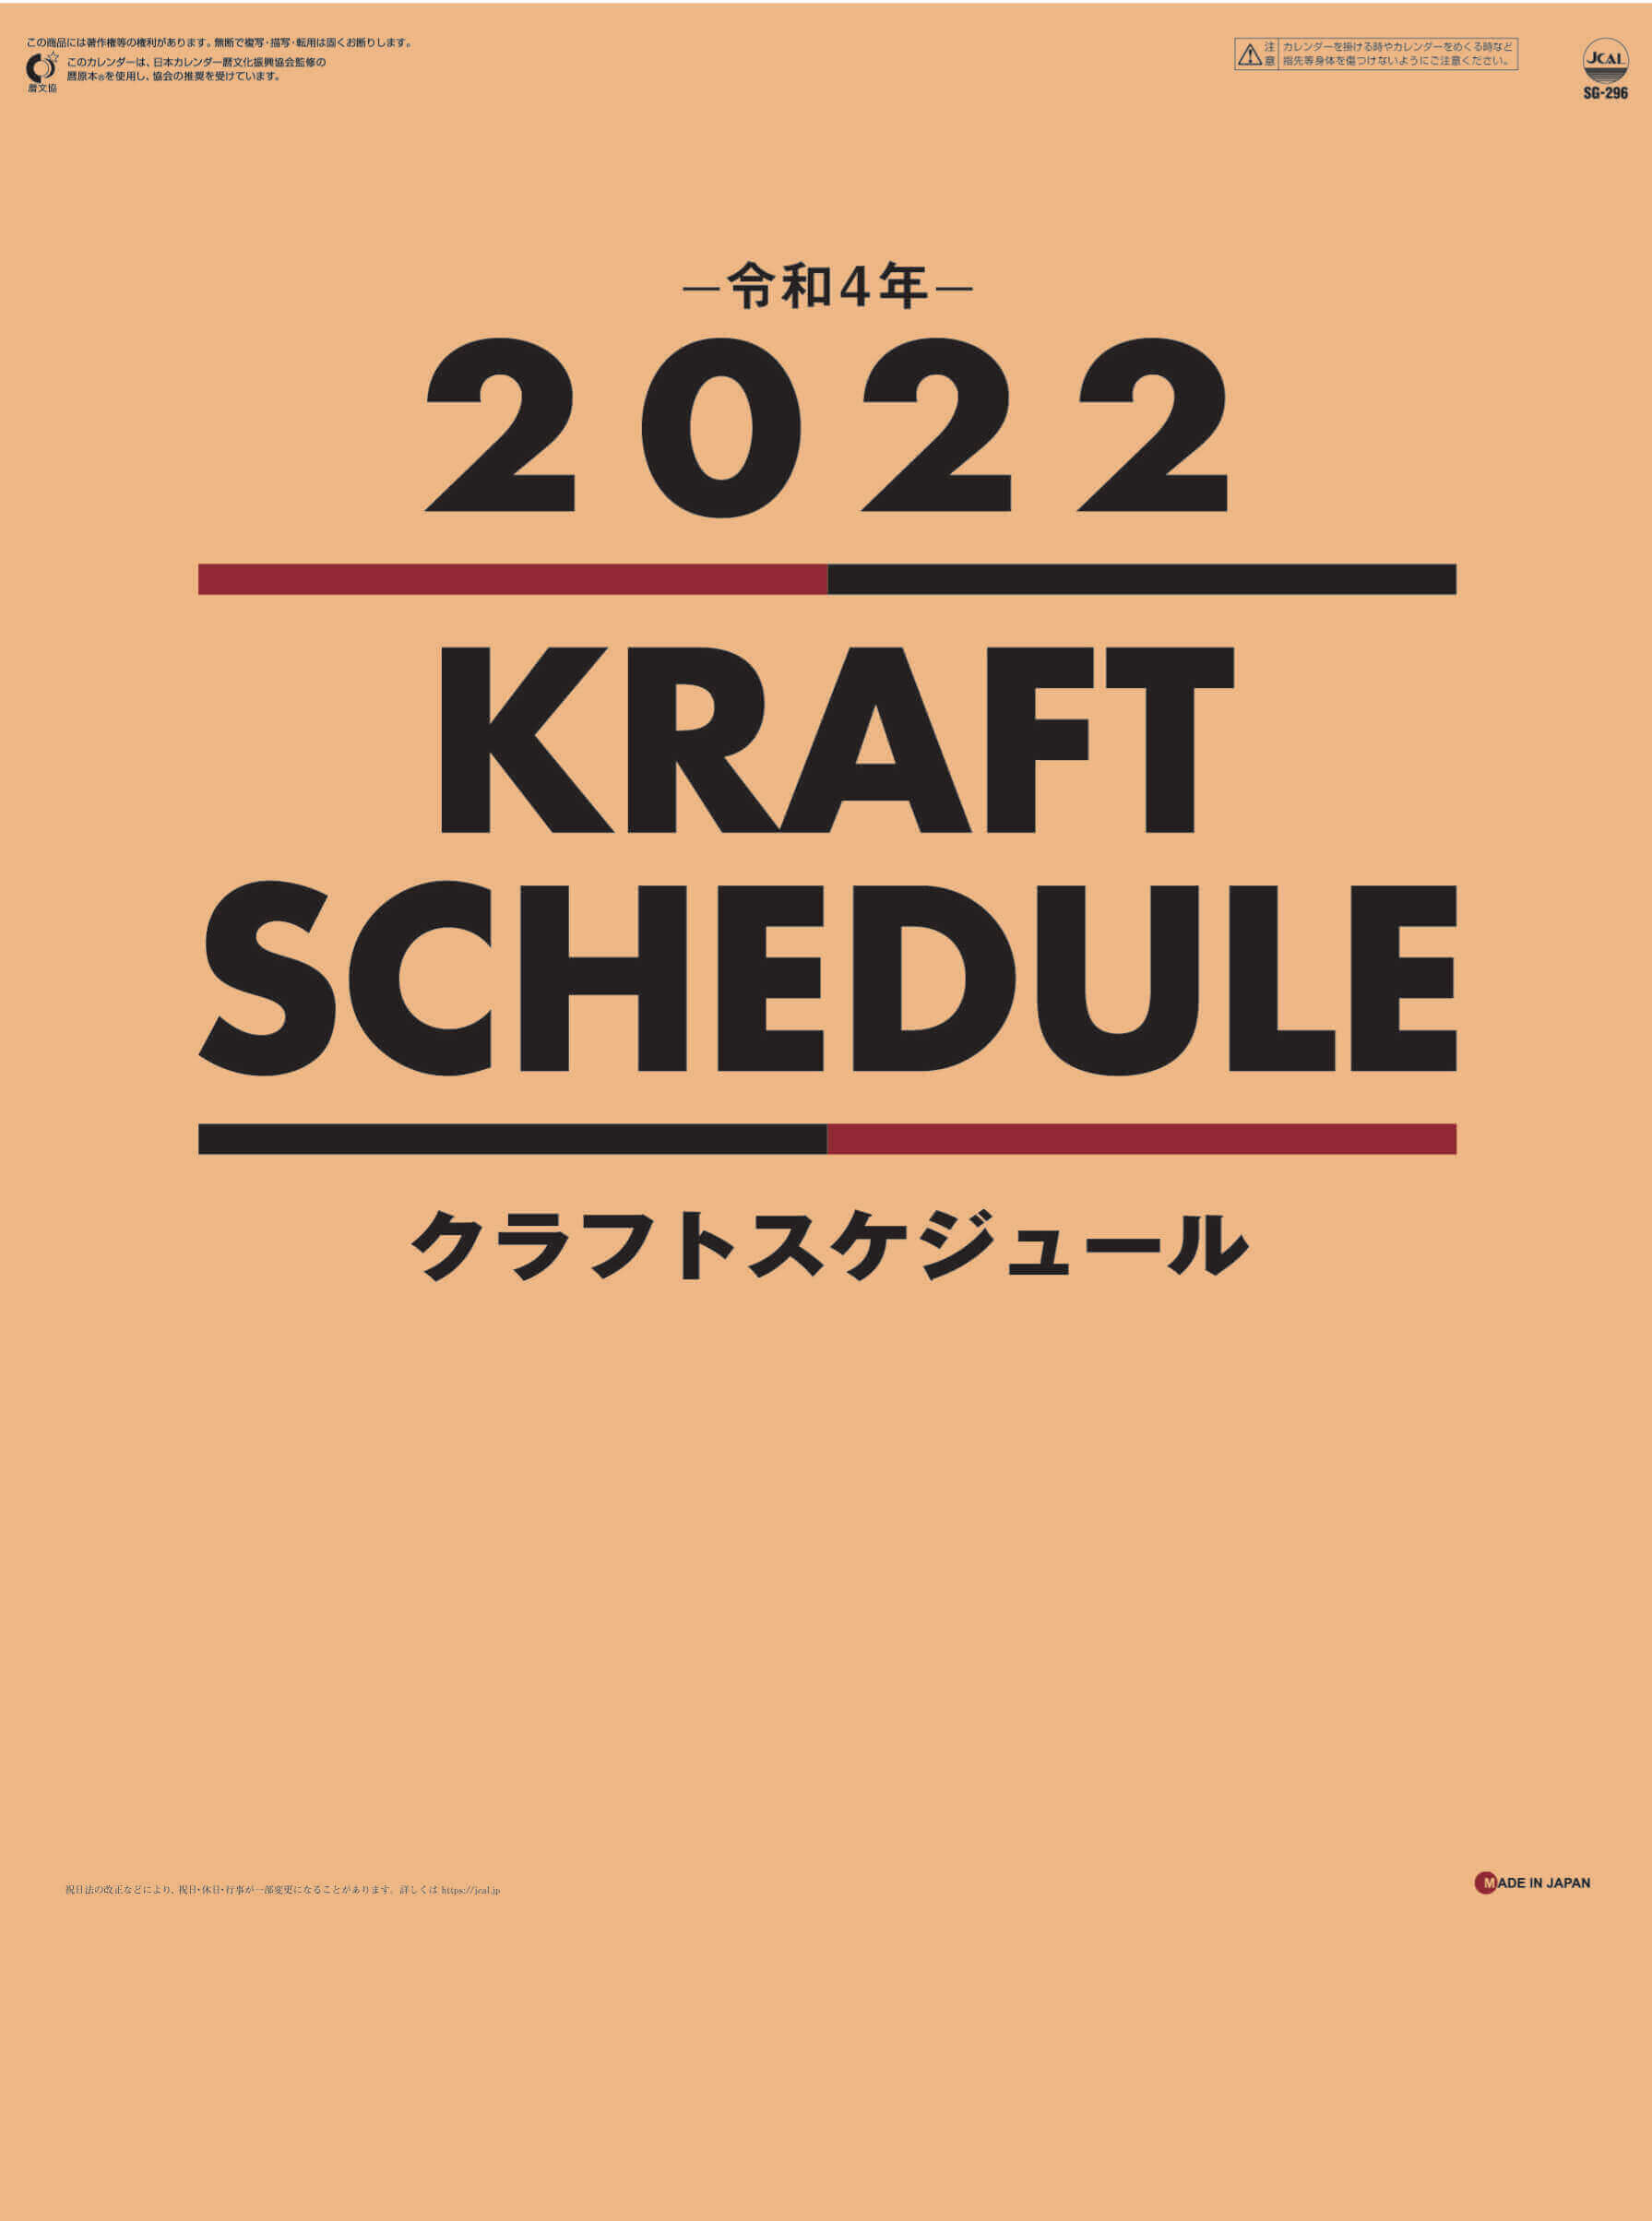  クラフトスケジュール 2022年カレンダーの画像